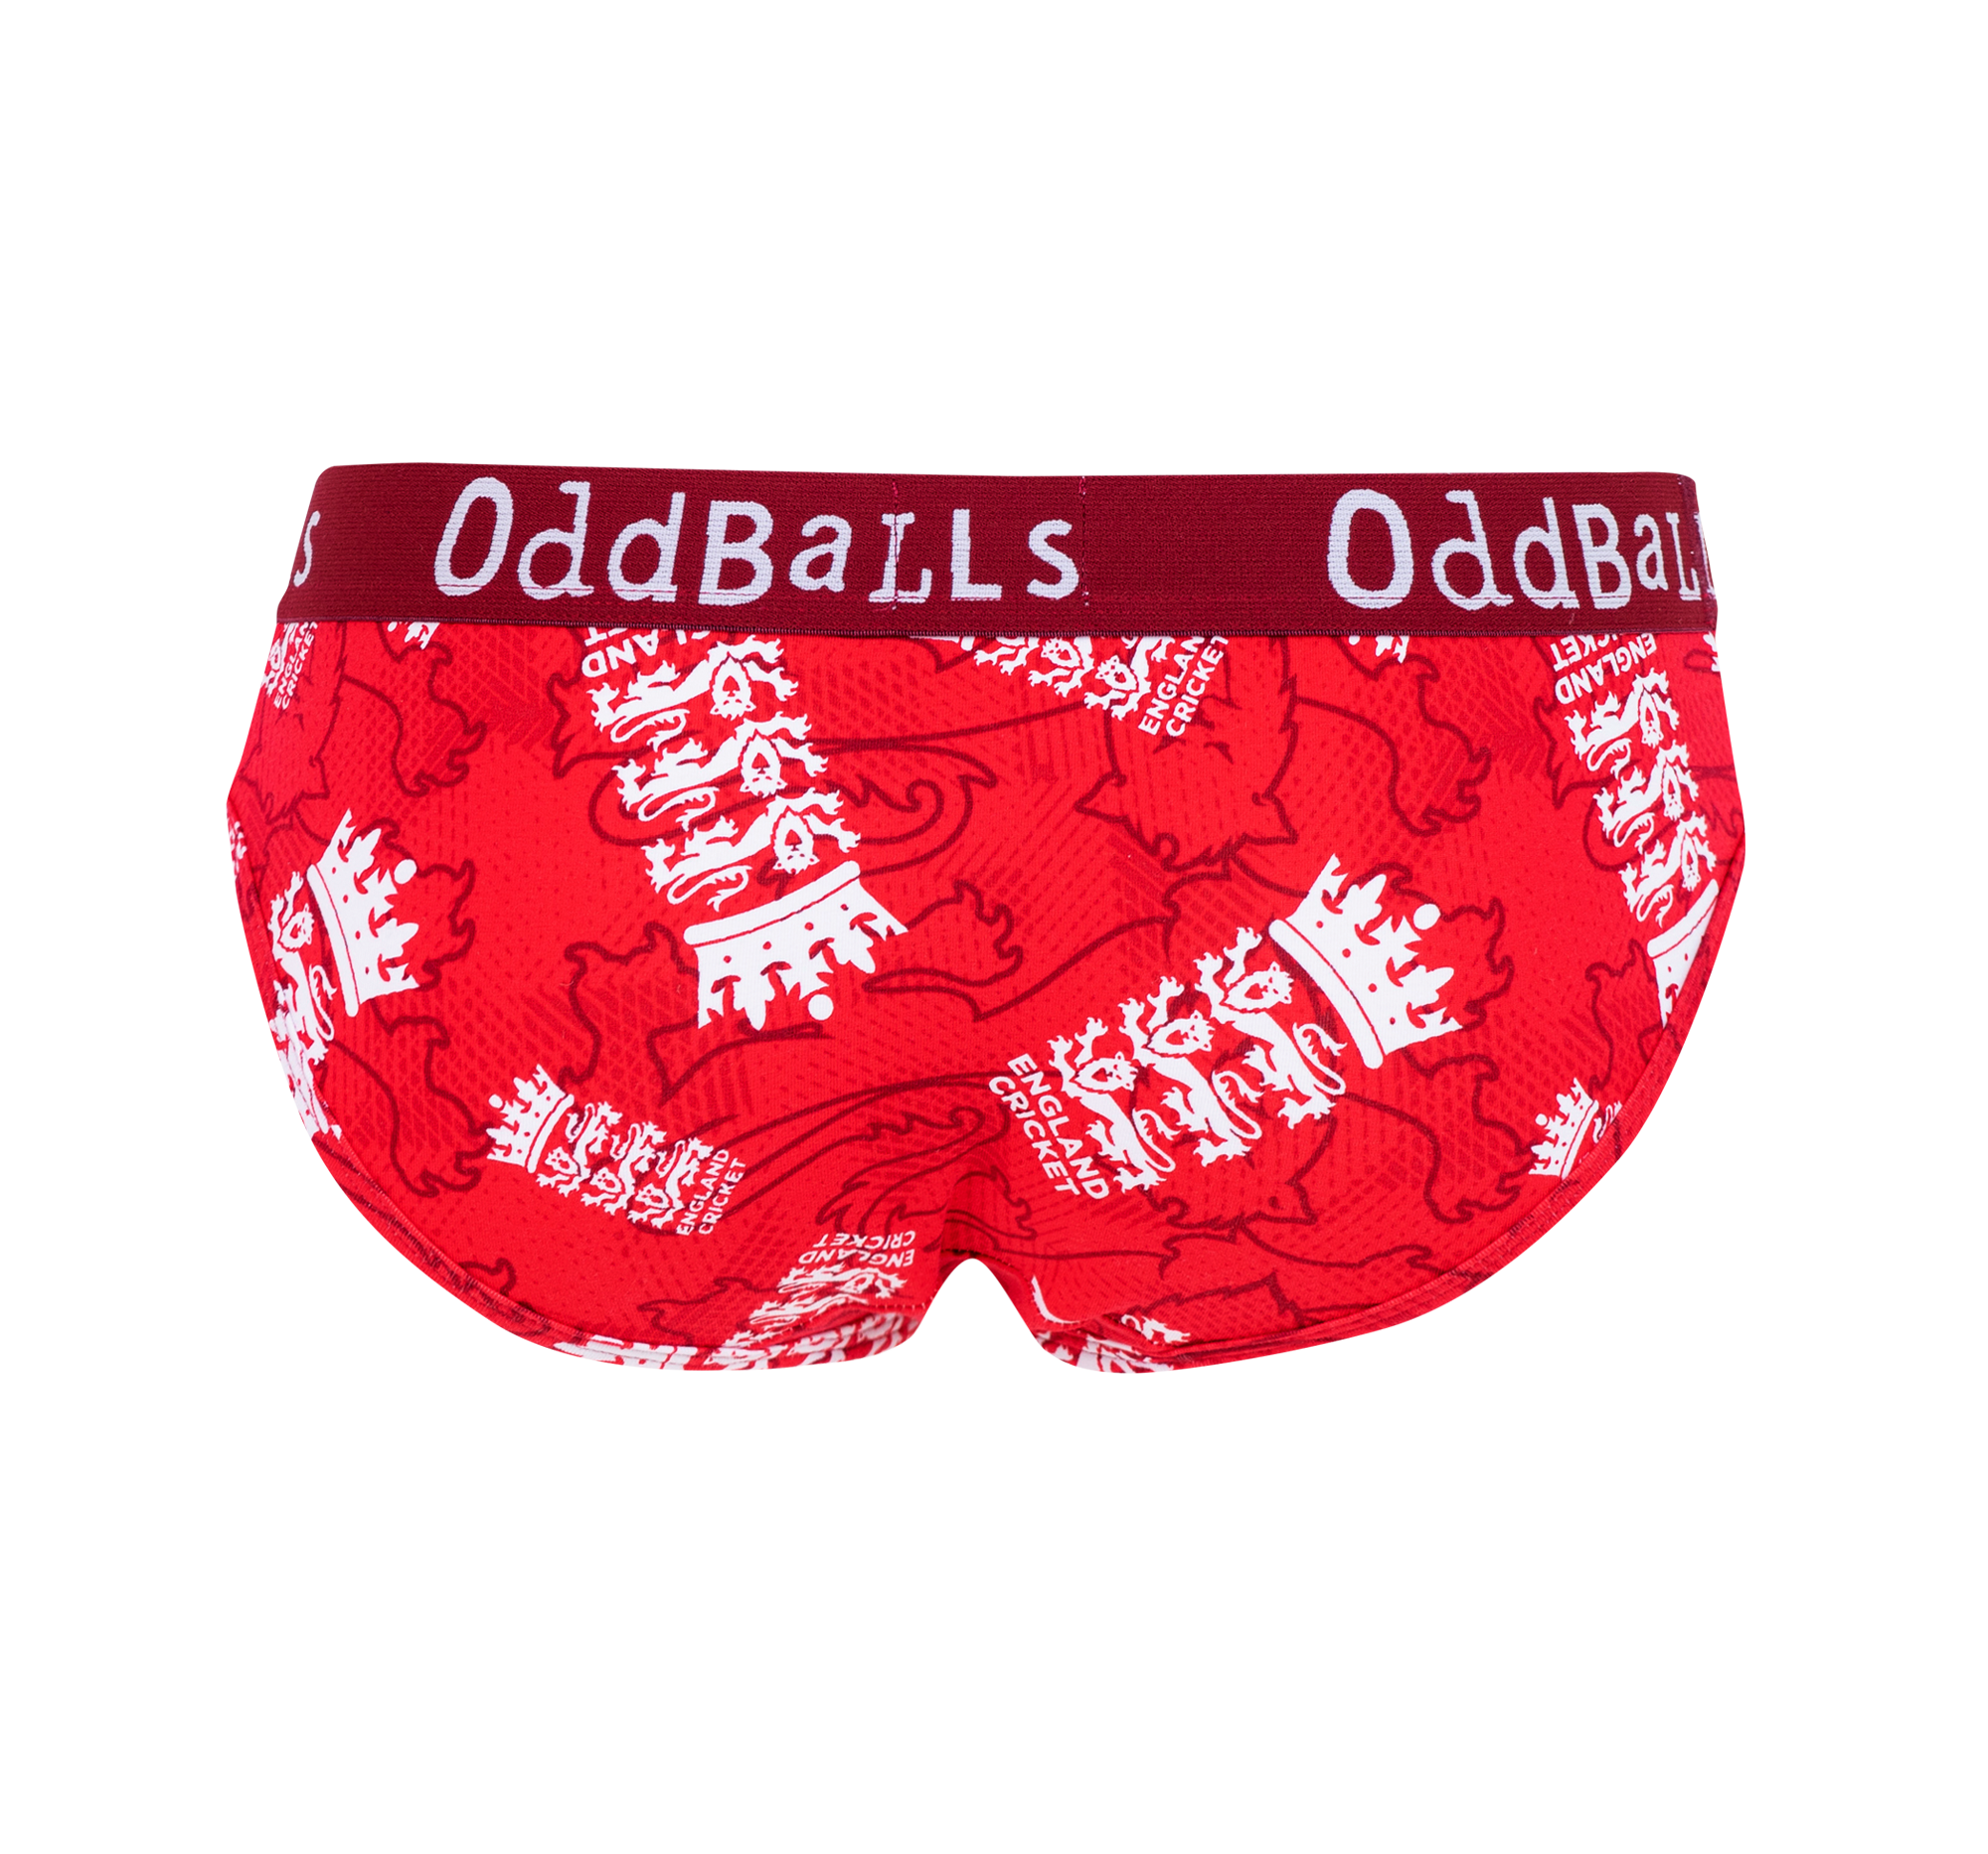 OddBalls Wales Rugby Ladies Brief